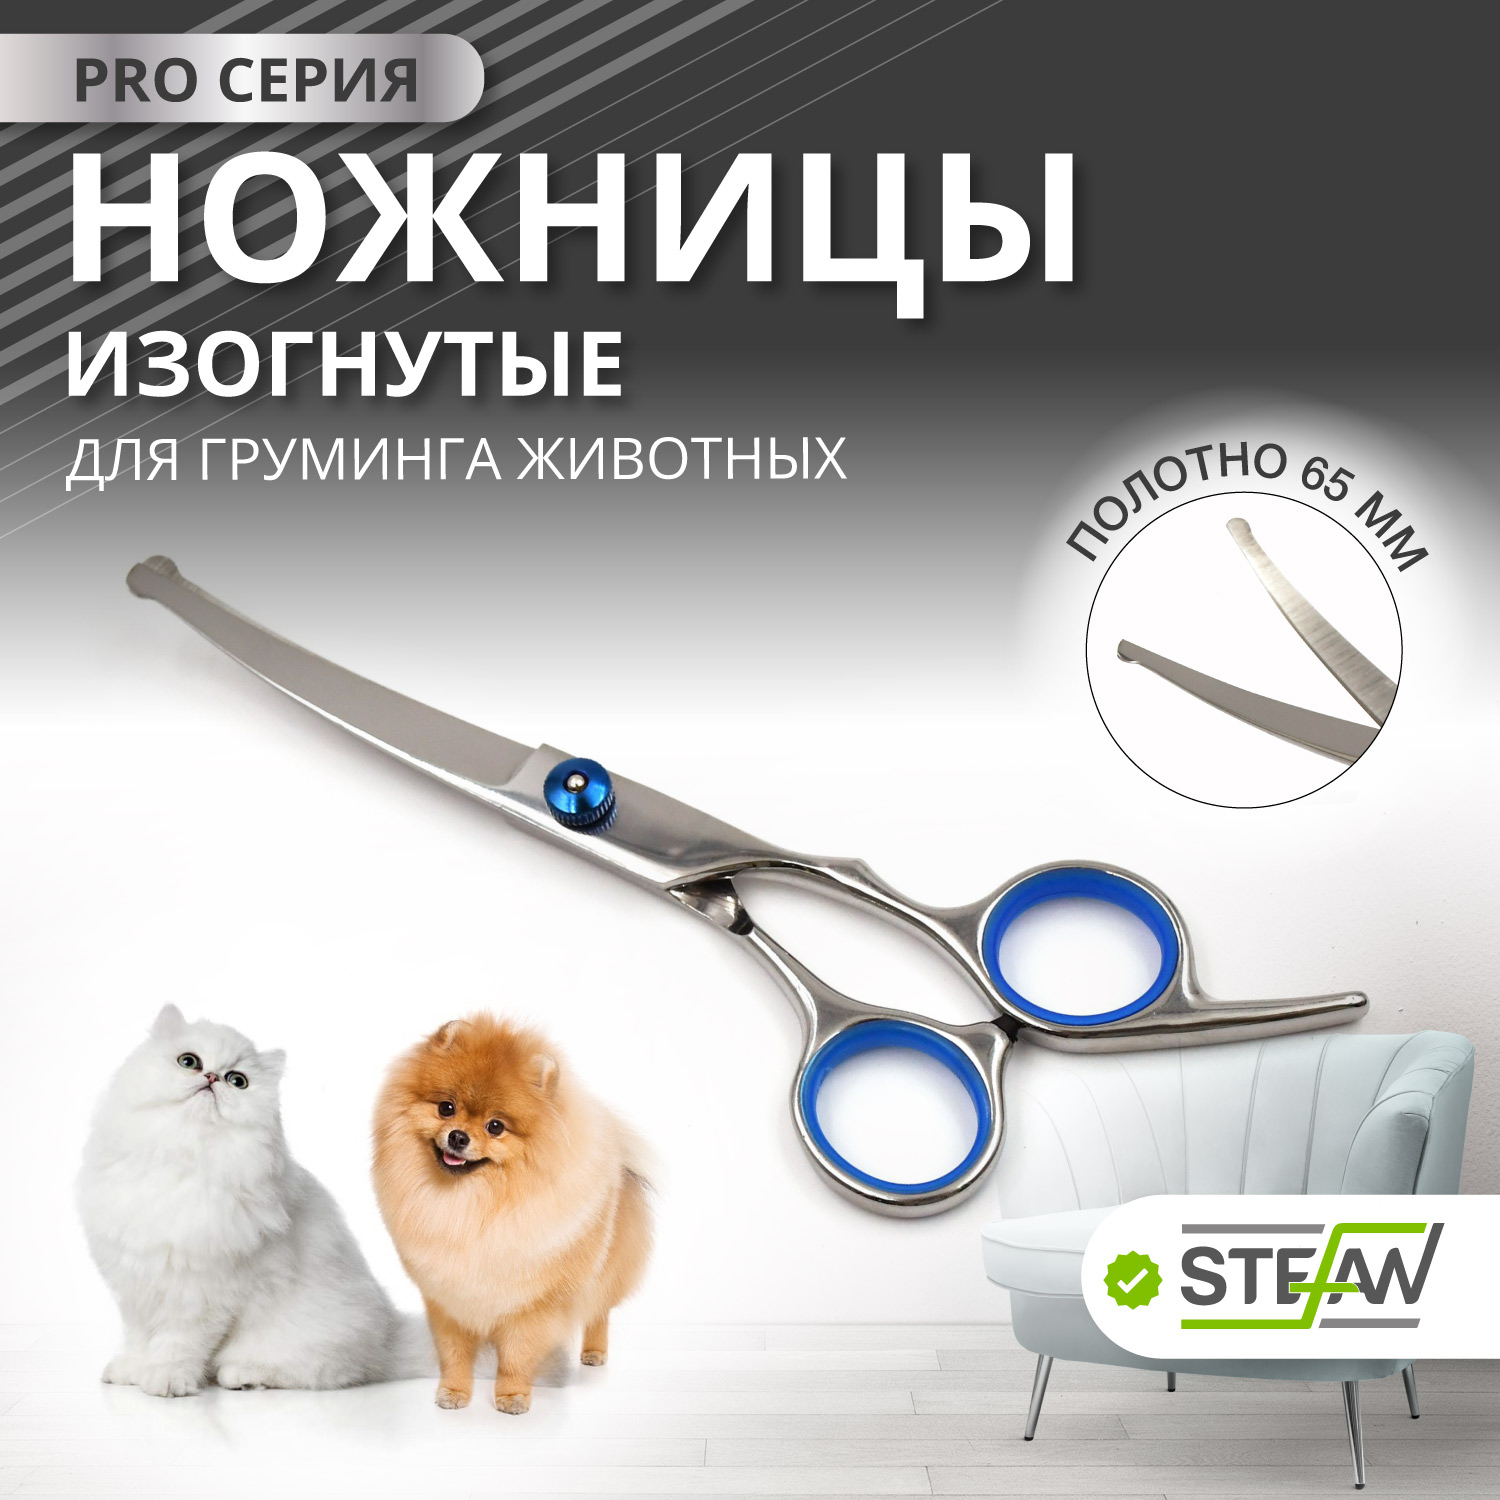 Ножницы PRO изогнутые с закругленными концами для груминга животных STEFAN, 65мм, GSC1265